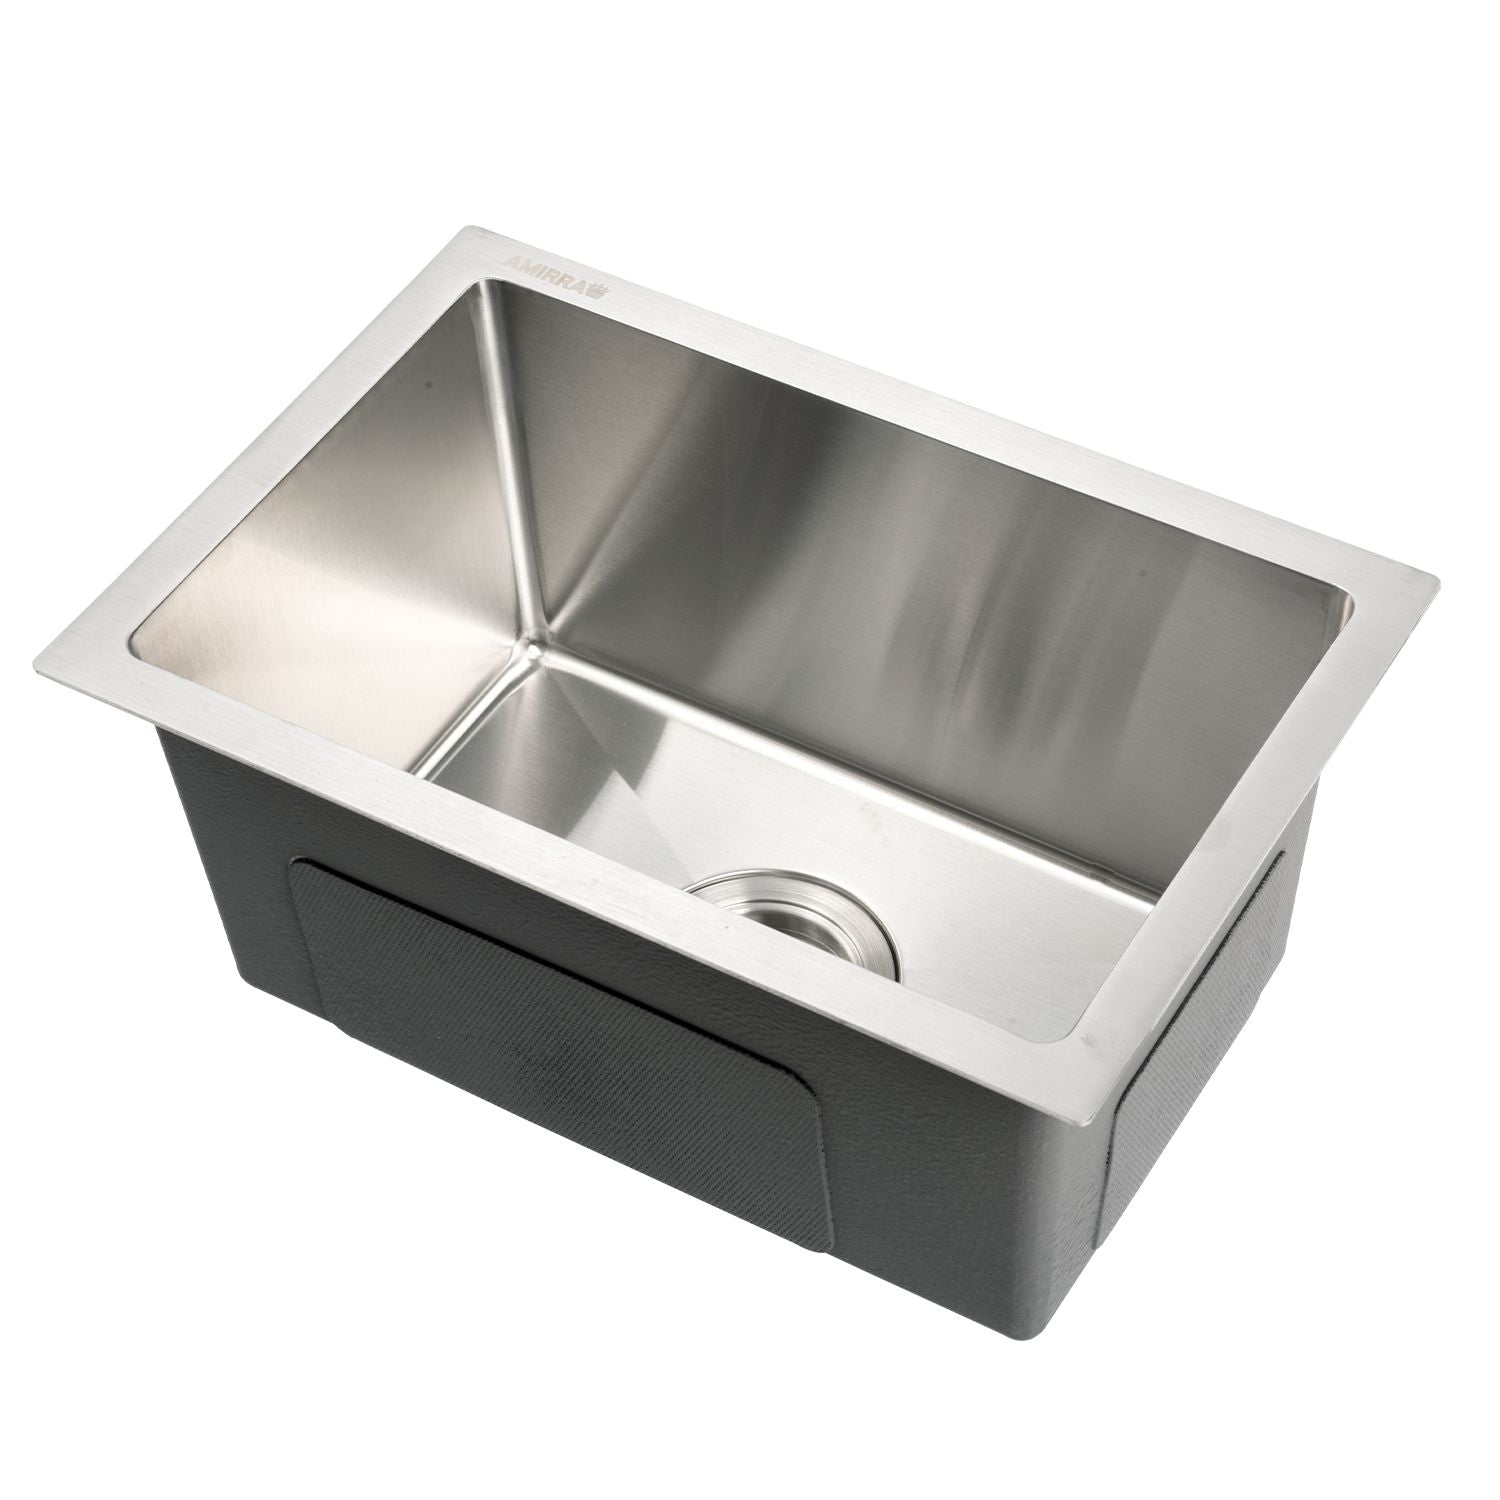 AMIRRA Kitchen Stainless Steel Sink 450mm x 300mm (Silver)